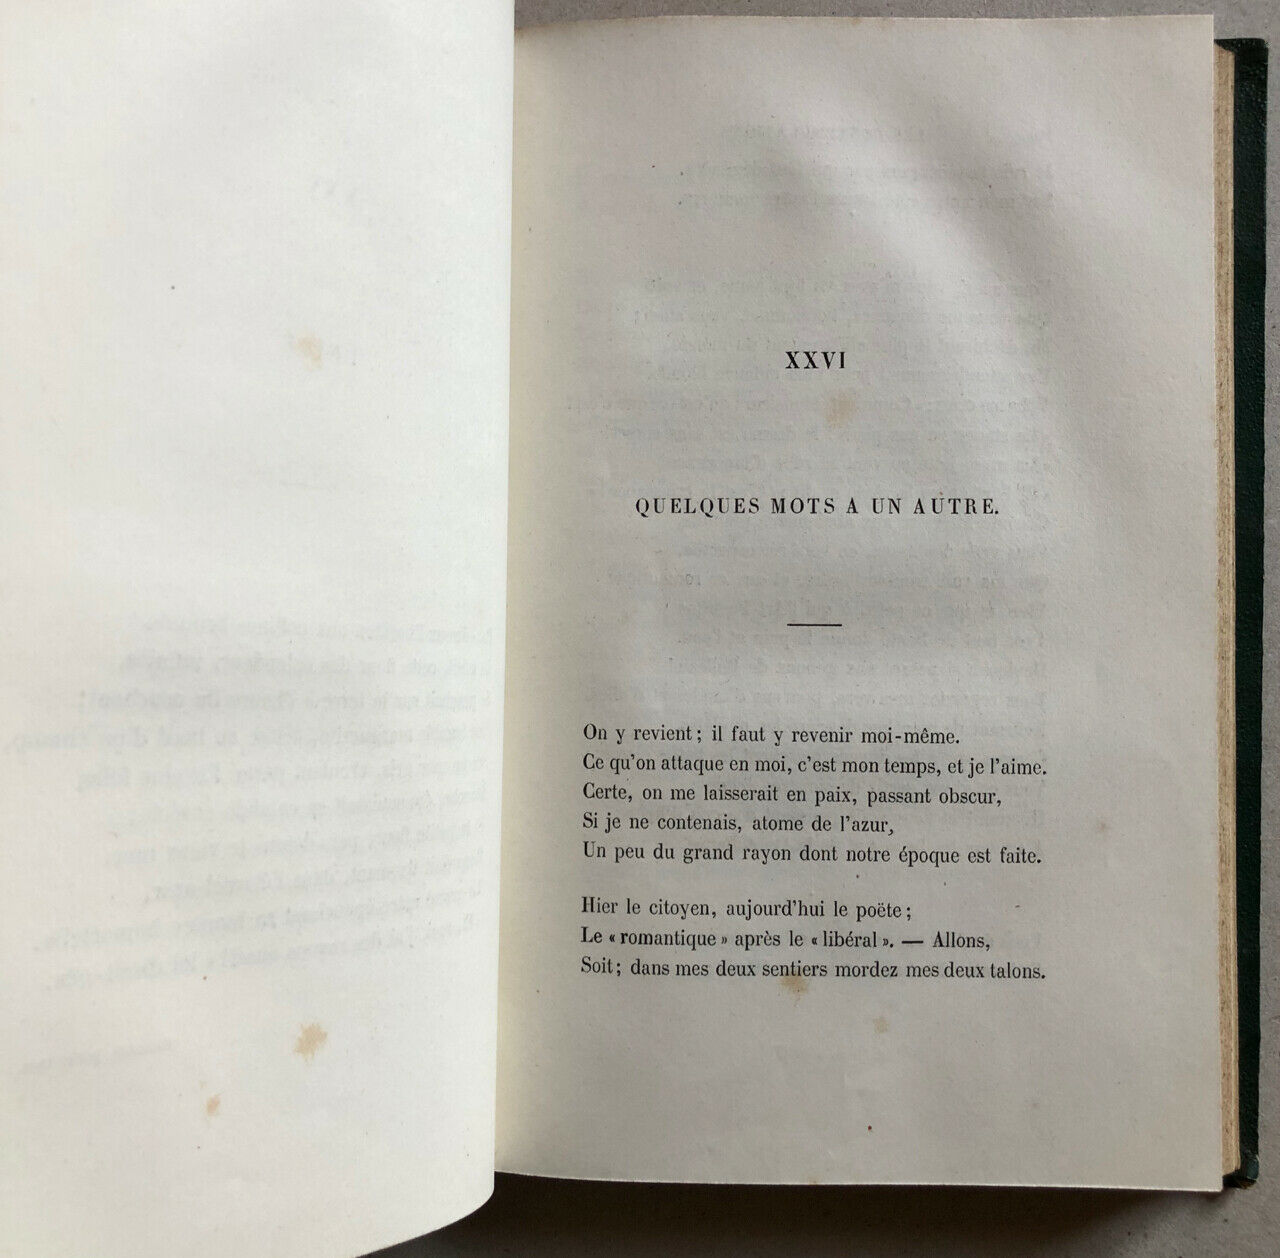 Victor Hugo — Les Contemplations — 2 vol — 2nd ed — Michel Lévy - Hetzel — 1856